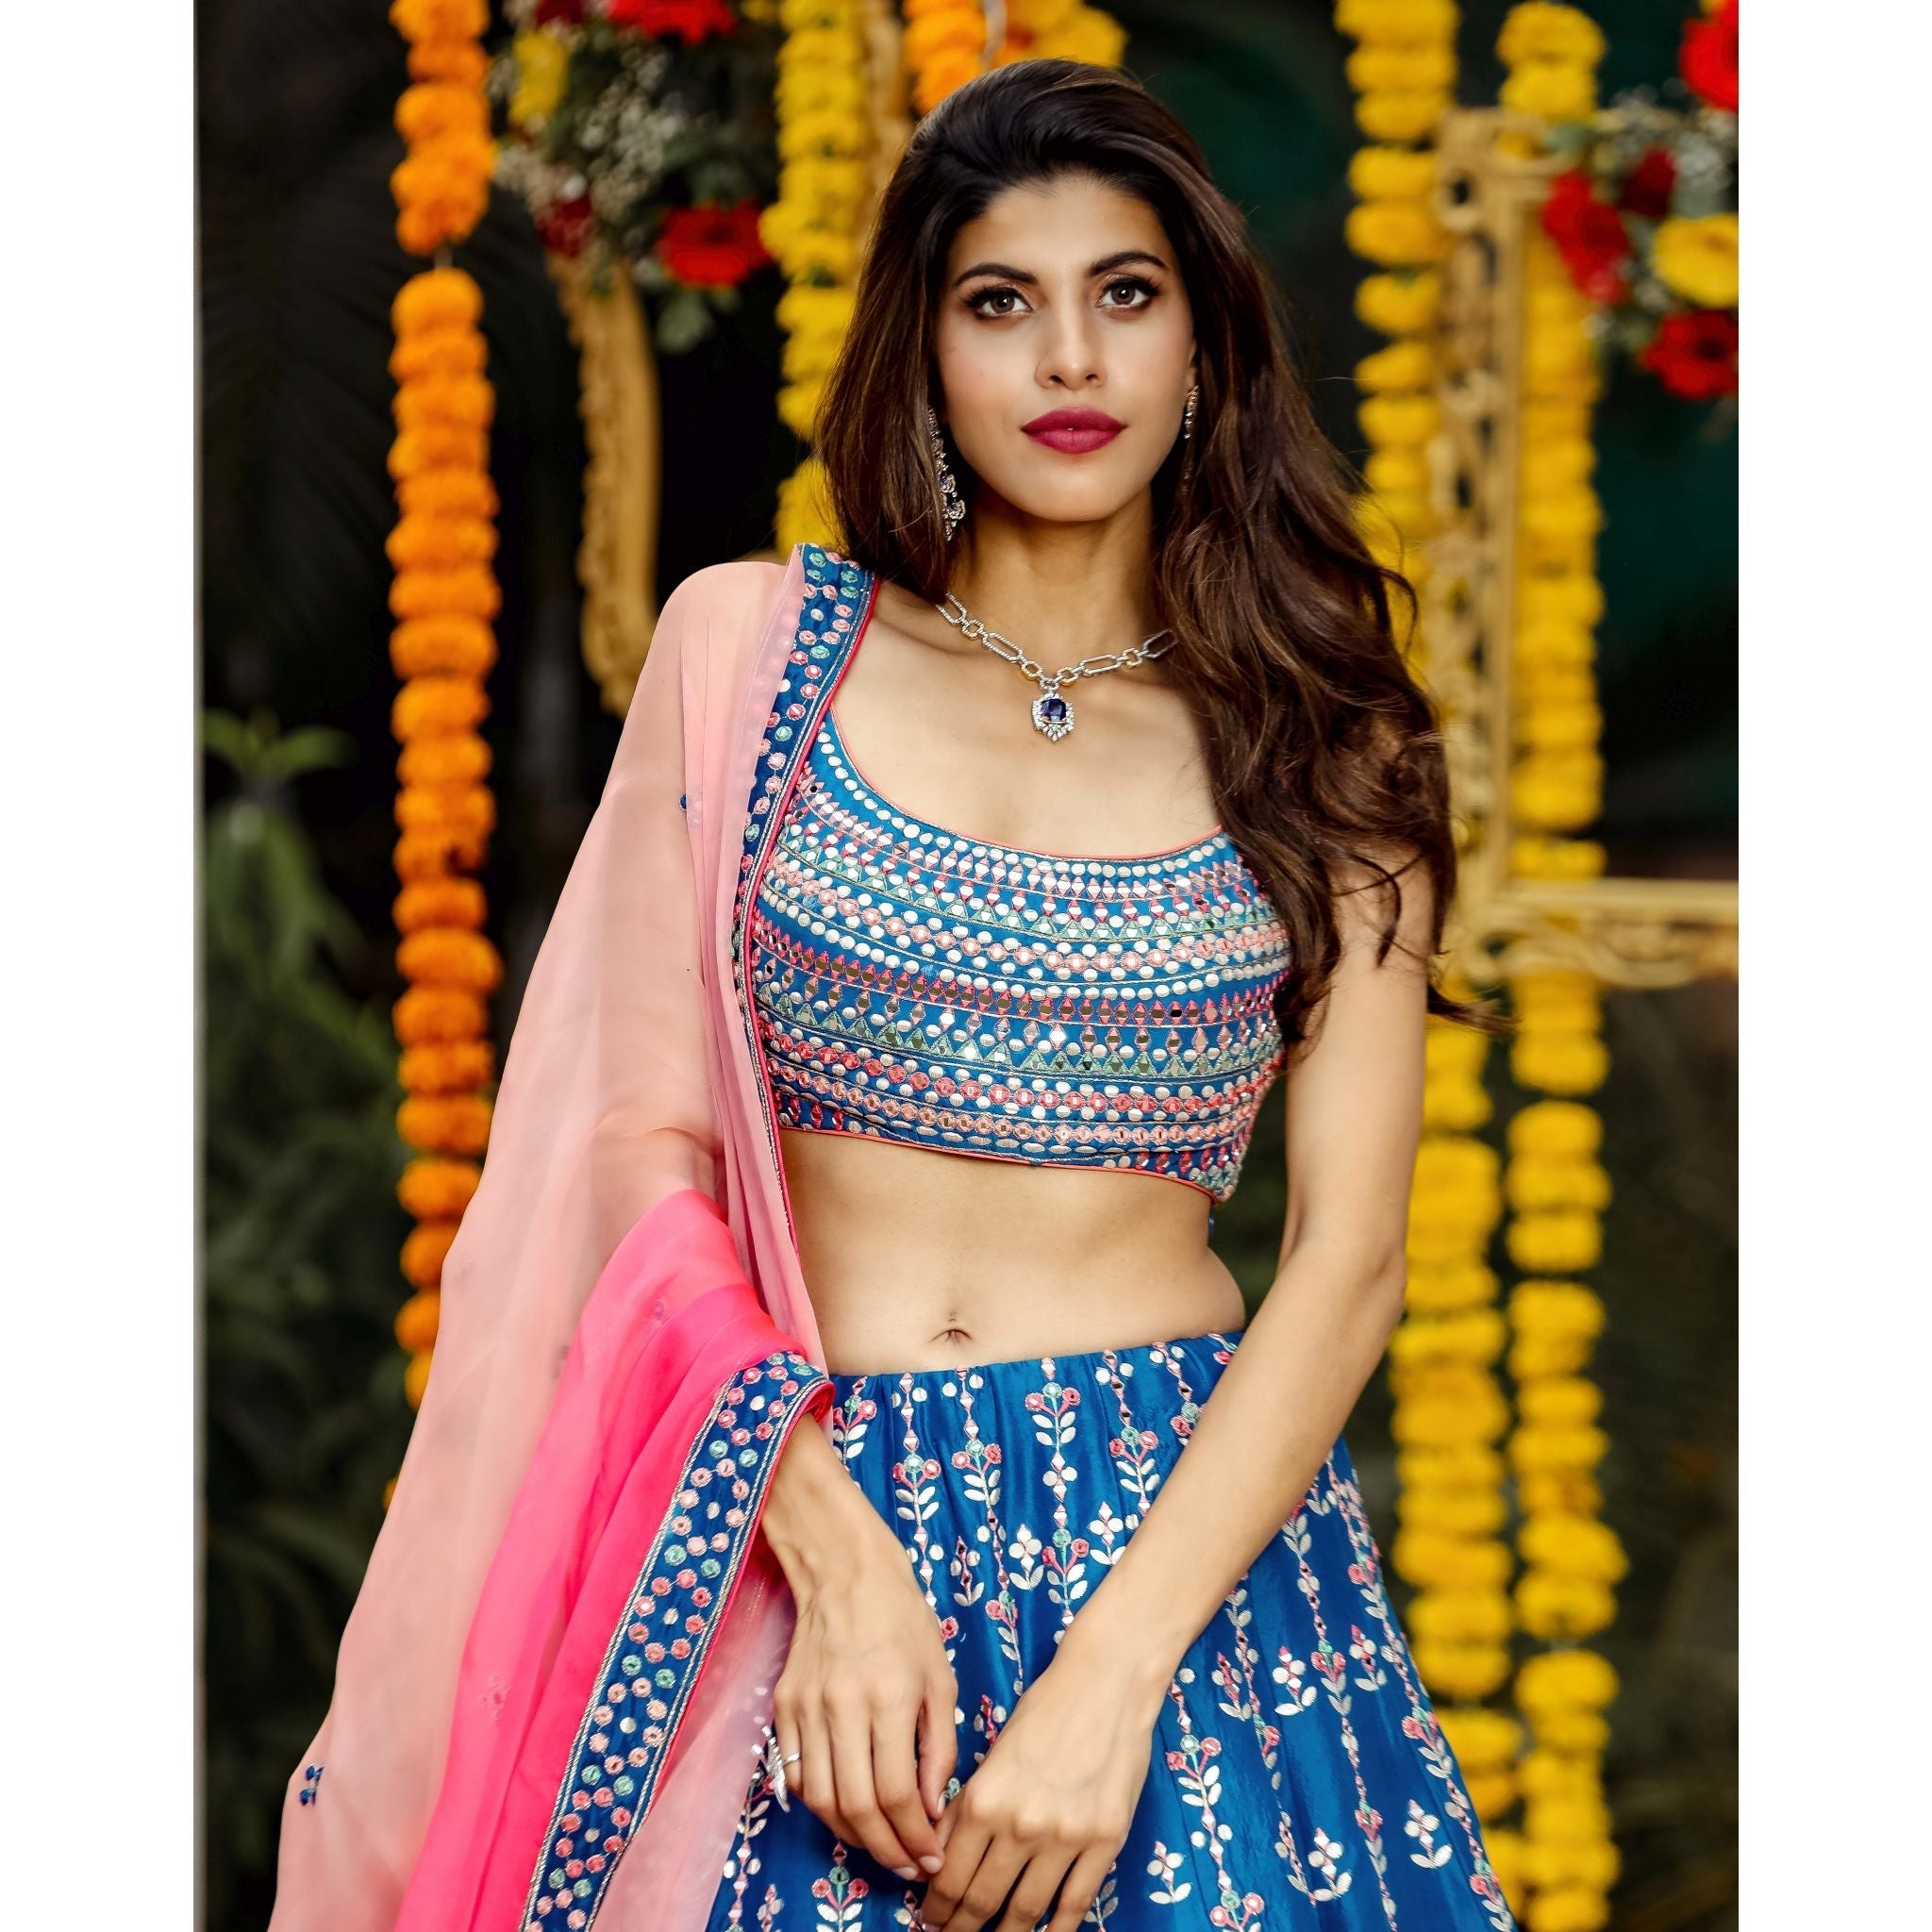 Teal Blue Mirrorwork Lehenga Set - Indian Designer Bridal Wedding Outfit